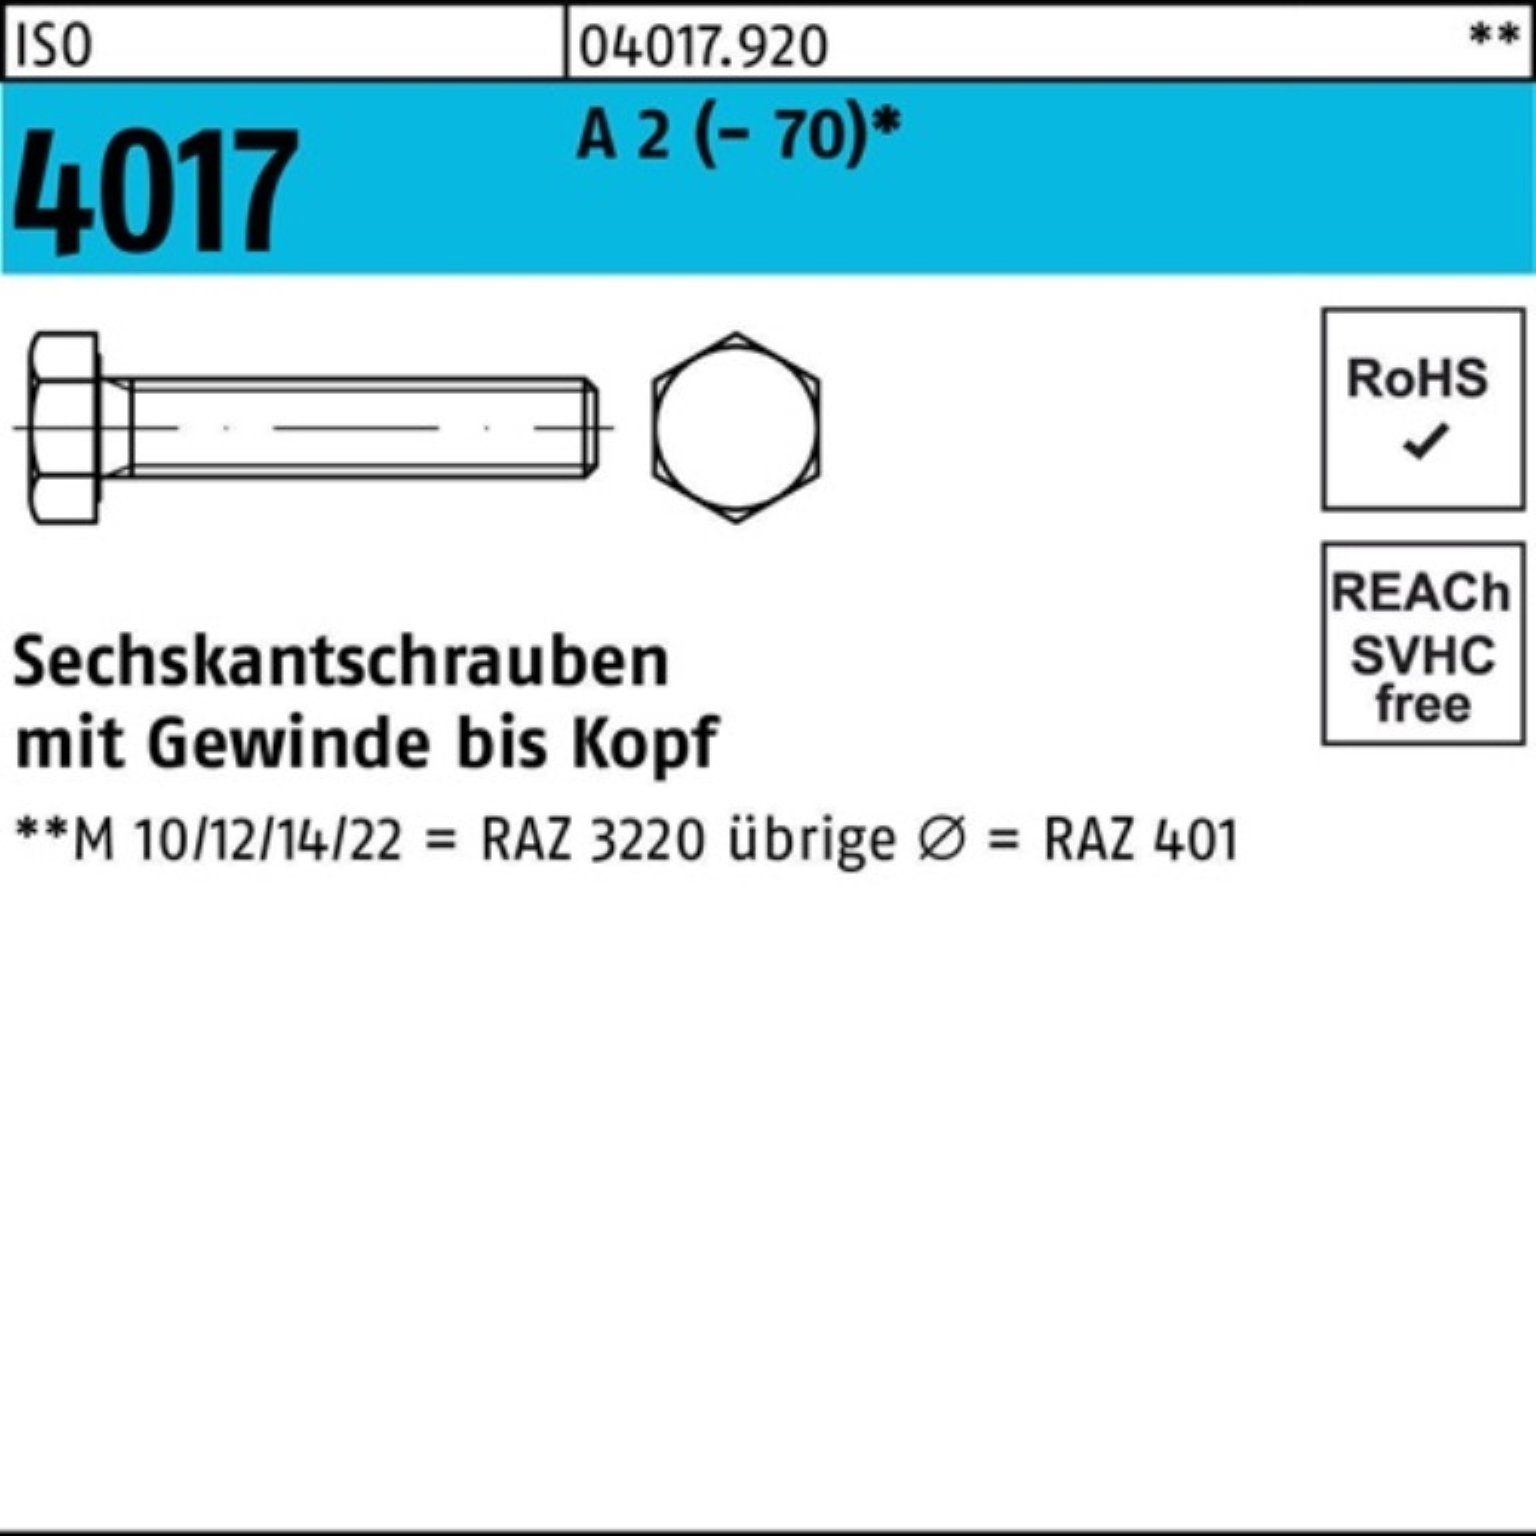 Bufab Sechskantschraube 100er Pack Sechskantschraube ISO 4017 VG M16x 75 A 2 (70) 25 Stück